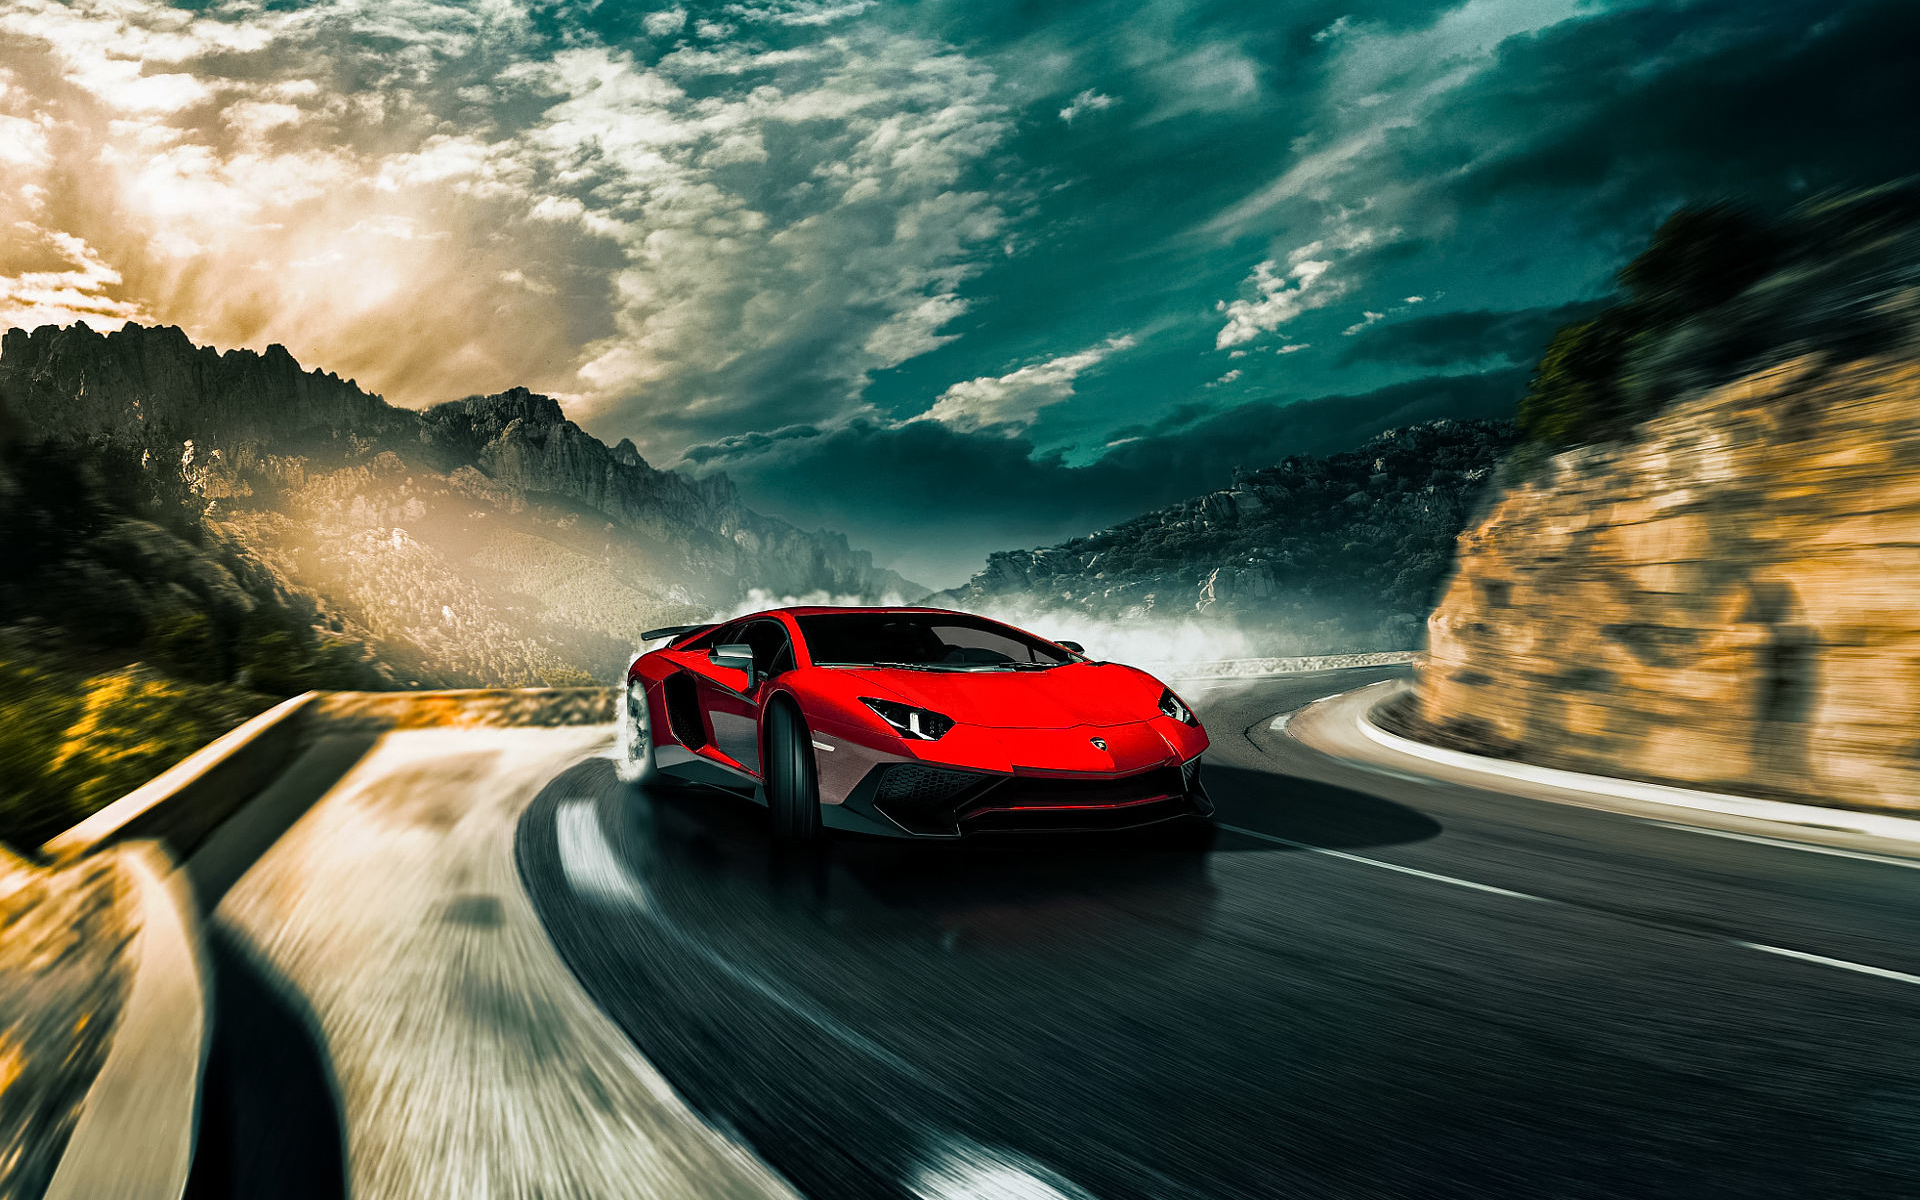 Descarga gratuita de fondo de pantalla para móvil de Lamborghini, Coche, Superdeportivo, Lamborghini Aventador, Vehículos, La Carretera.